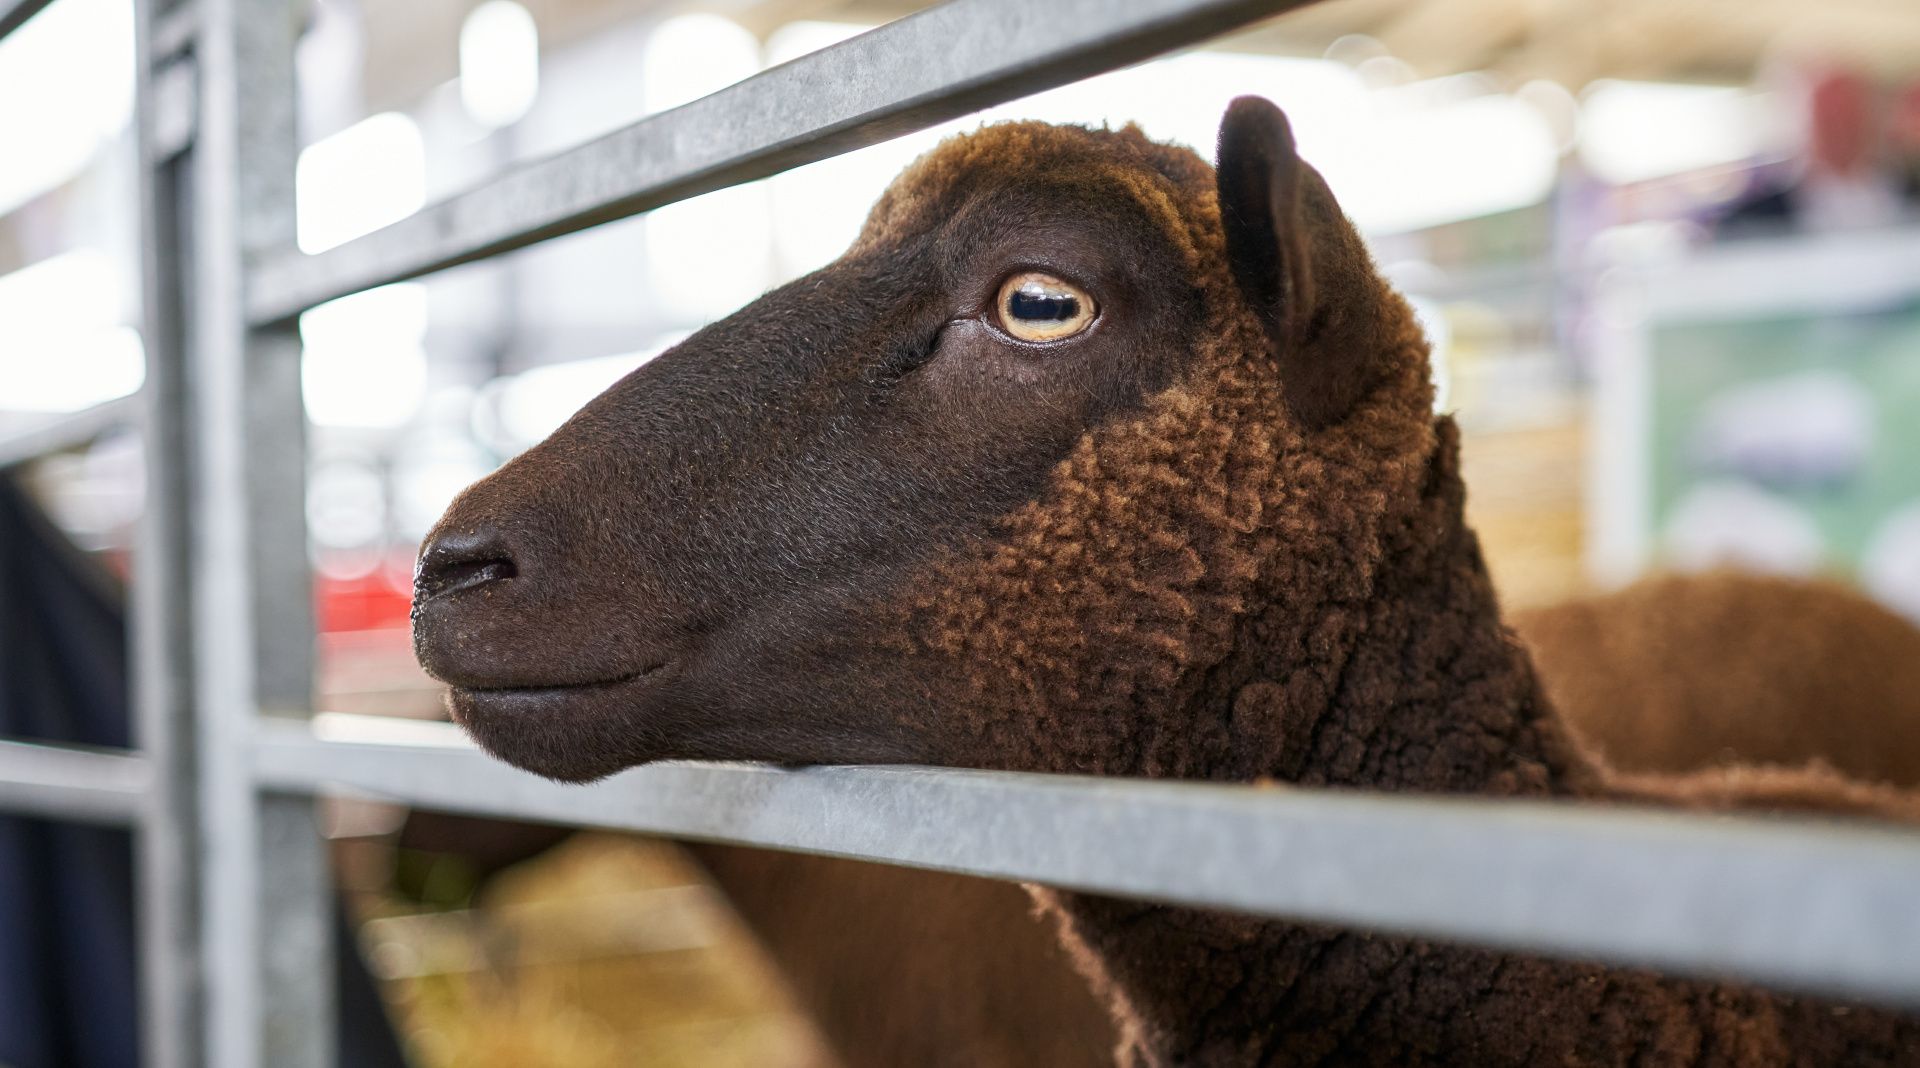 Lamb at a farm show